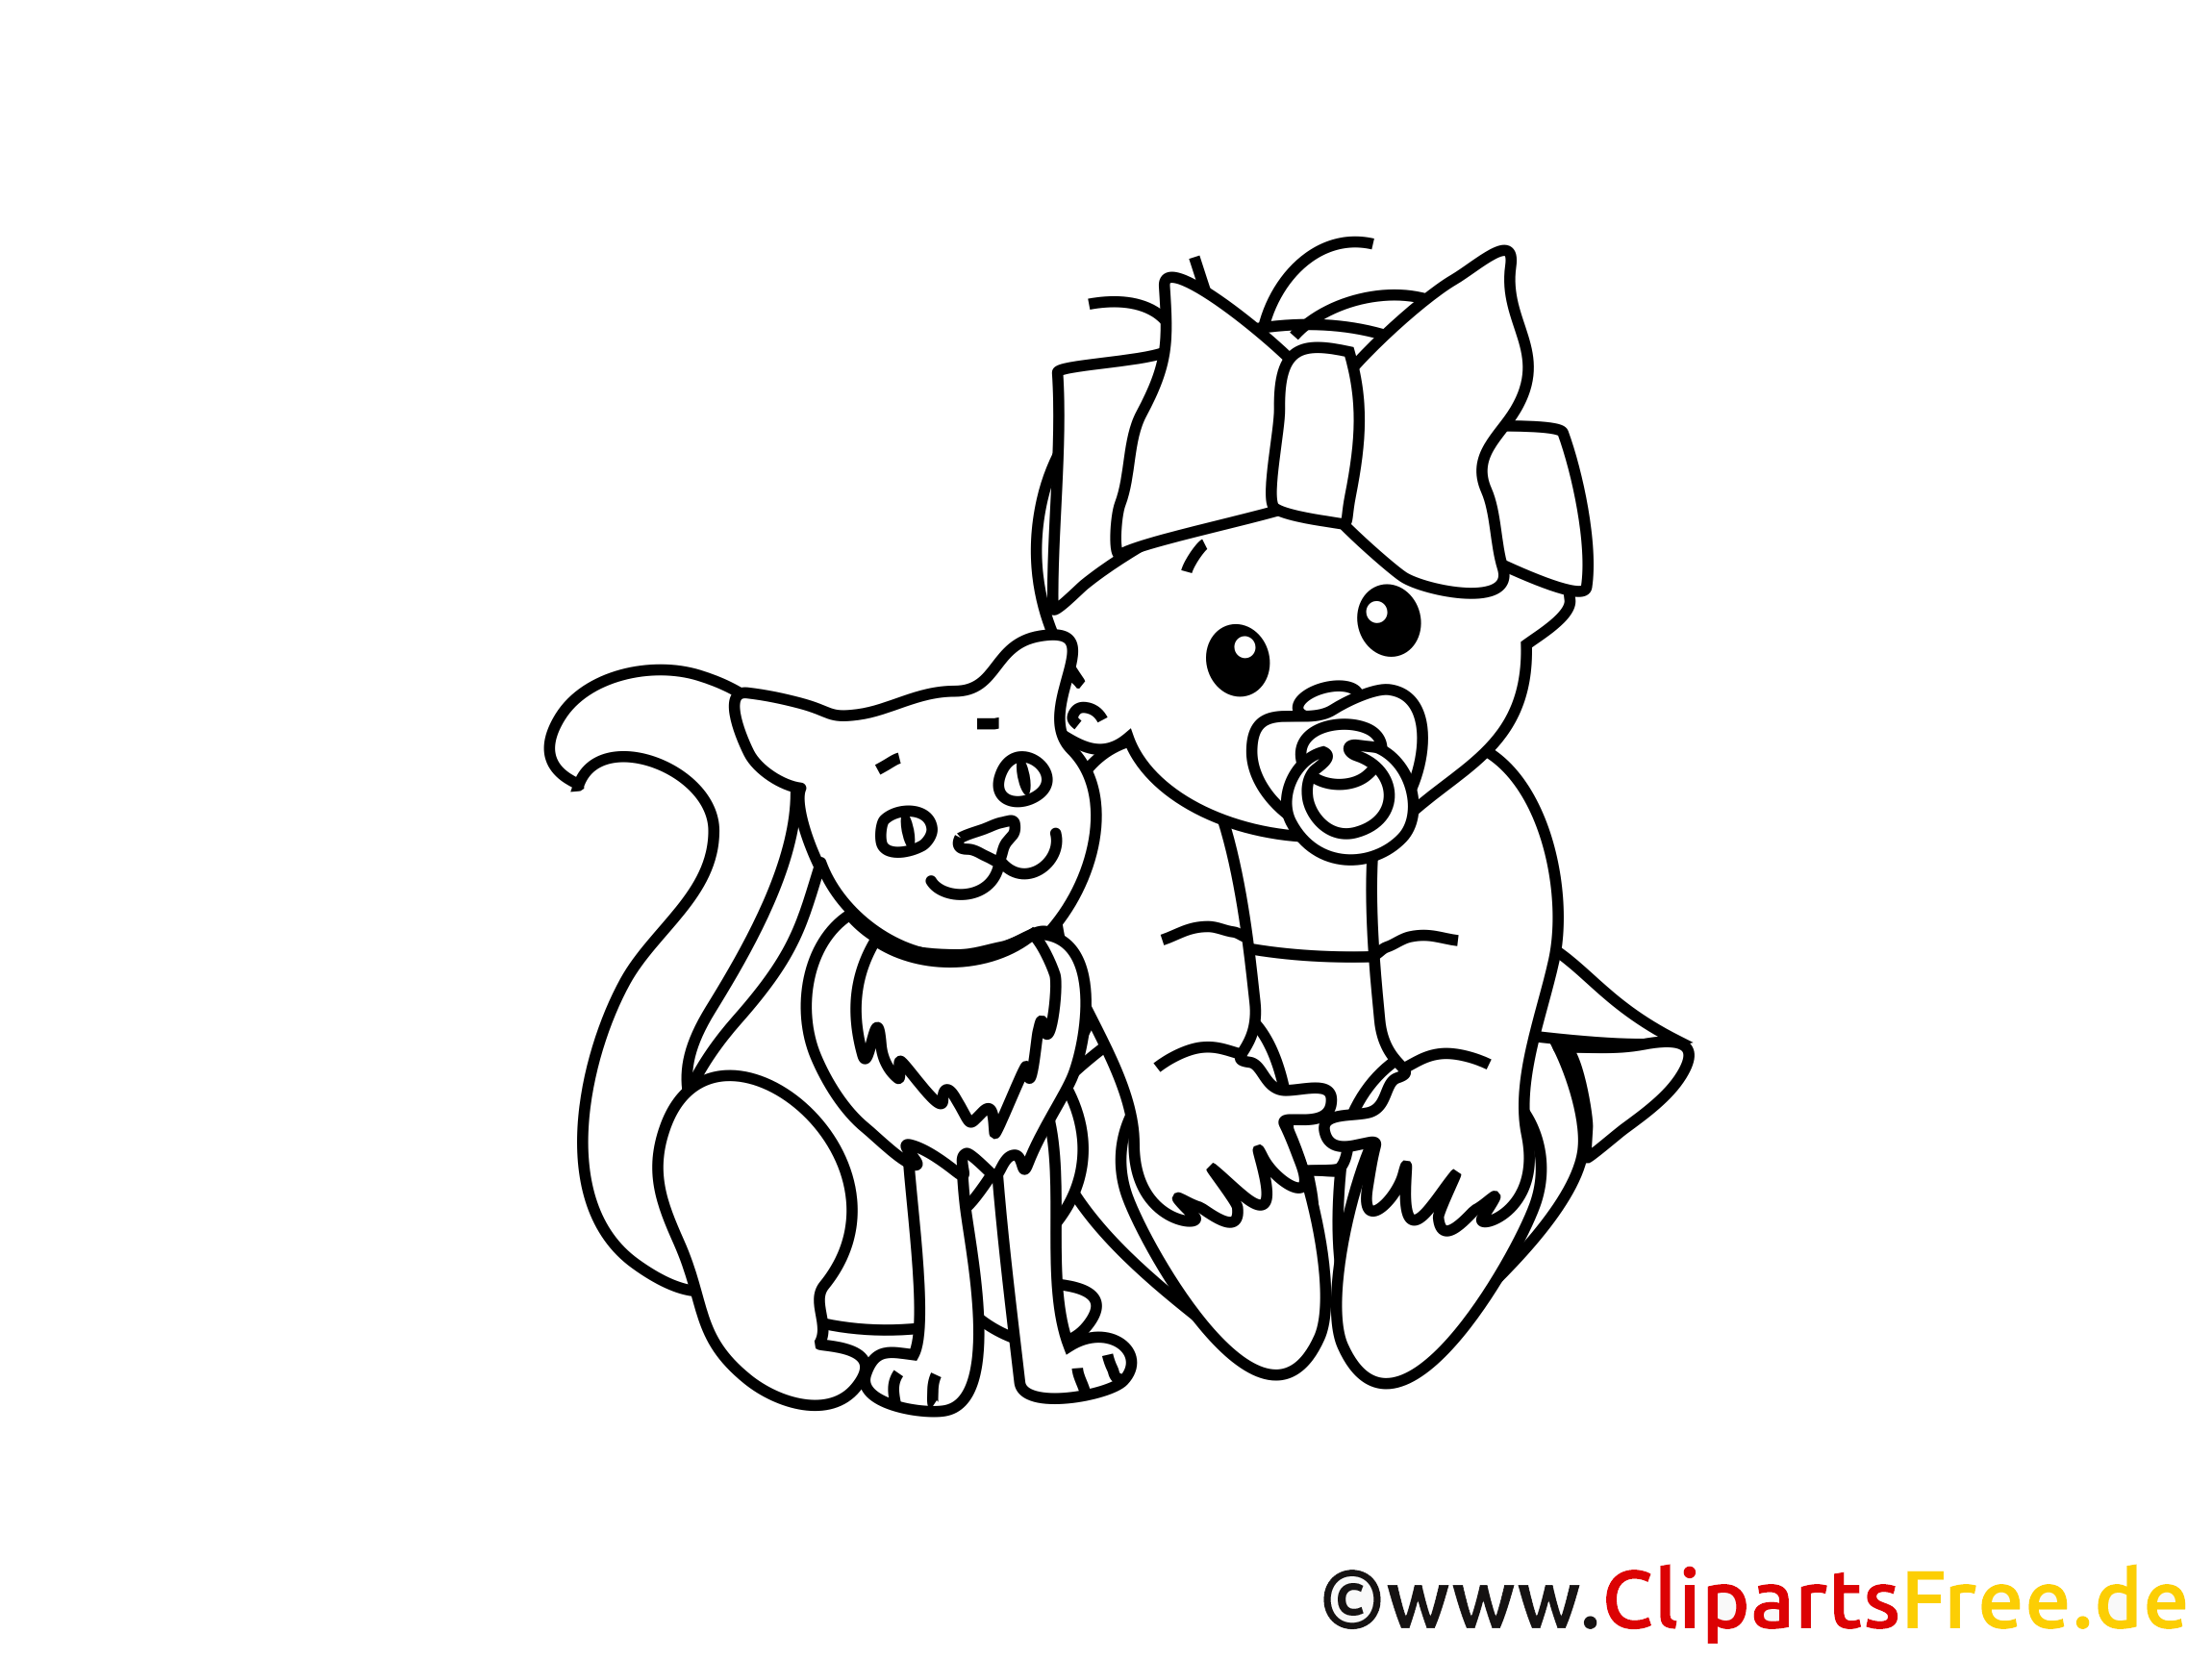 Chat clipart – Bébé dessins à colorier